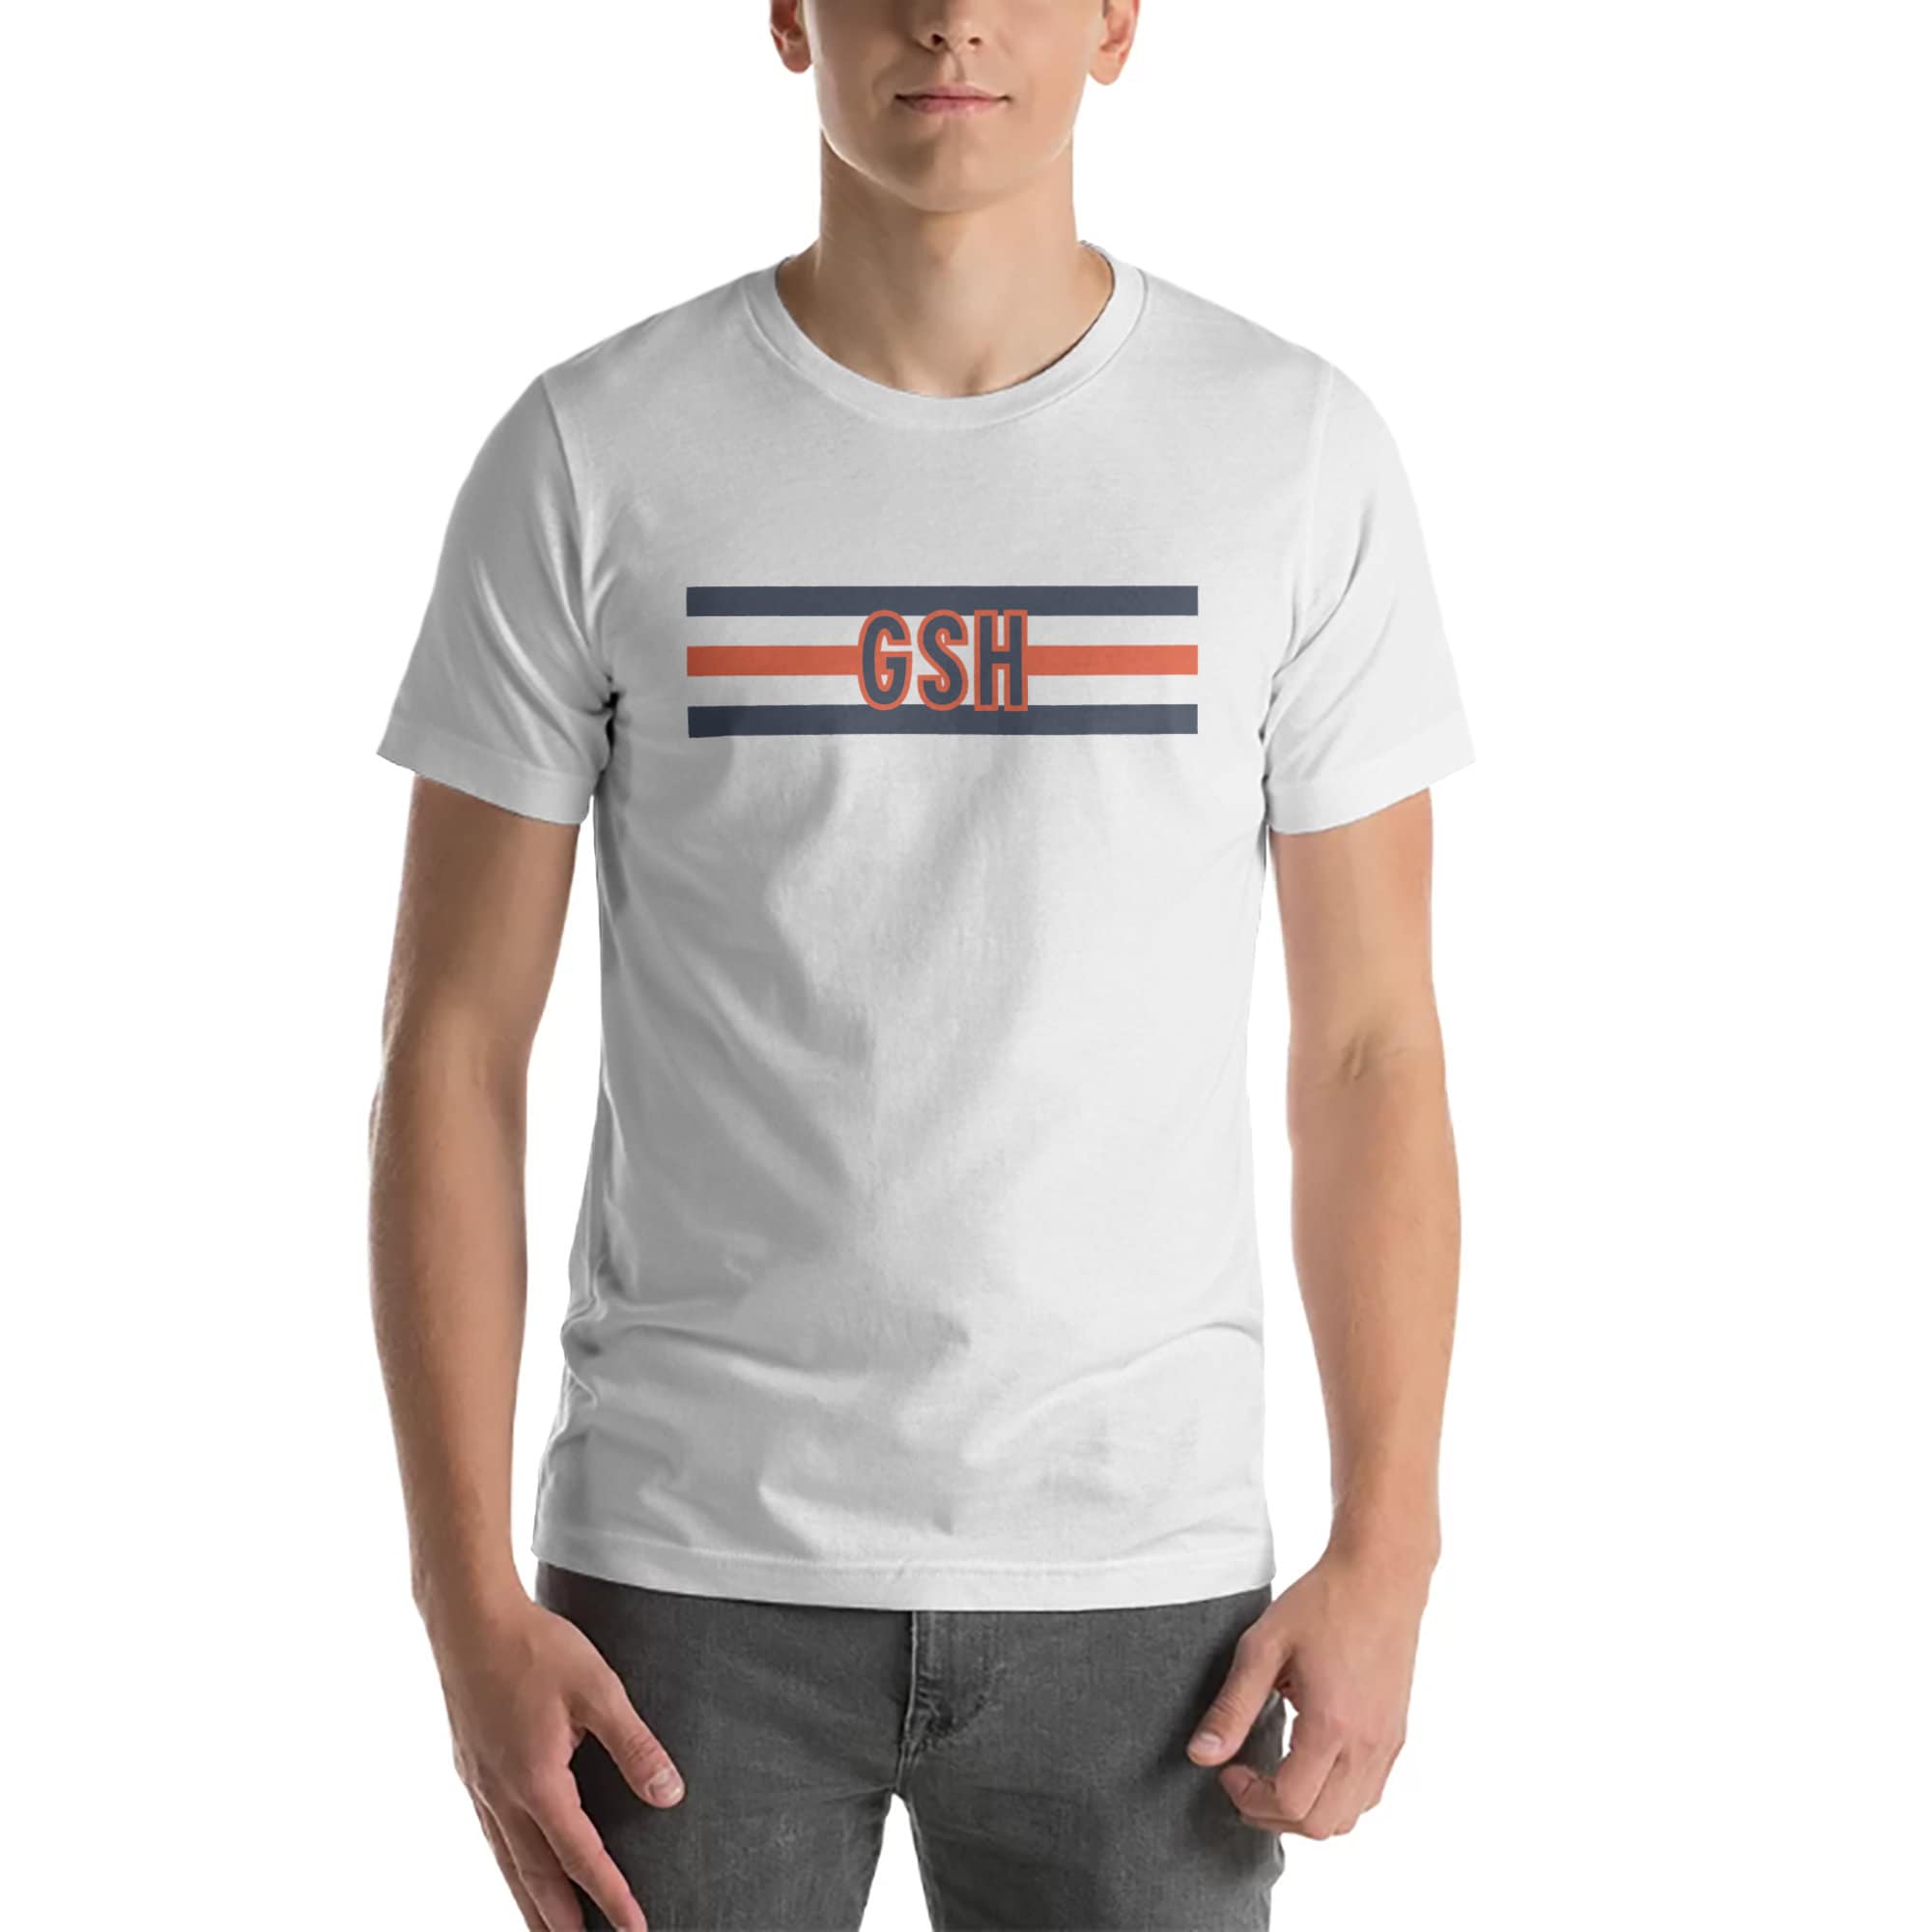 Taille Fabricant : M HEAD Club Chris T-Shirt JR T_Shirts Enfant Blanc FR M